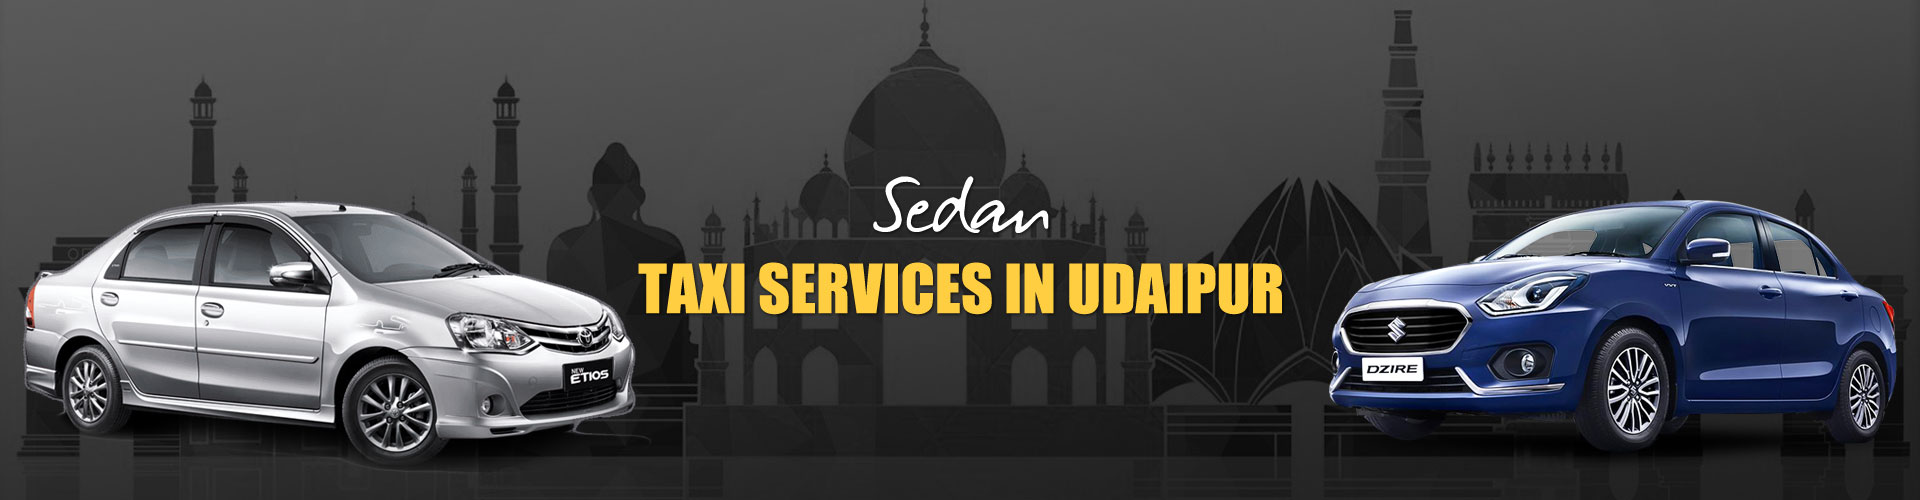 Udaipur Car Rental Services - Mateshwari Tours